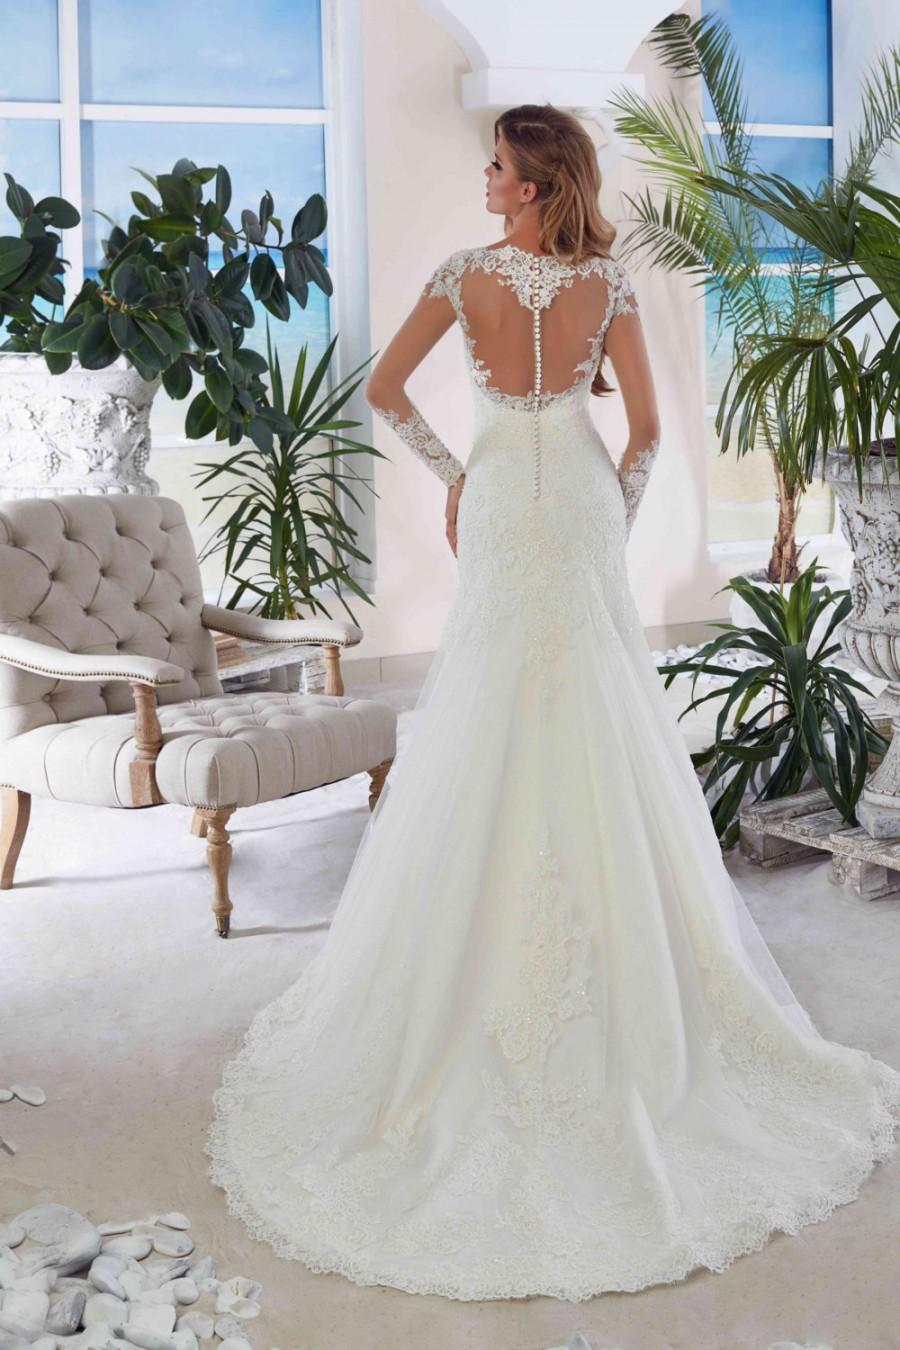 Mariage - Bridal Lace Wedding Dress - Adina Wedding Stunning Lace Dress - Long Wedding Dress with Train - Cathedral  Elegant Wedding Dress